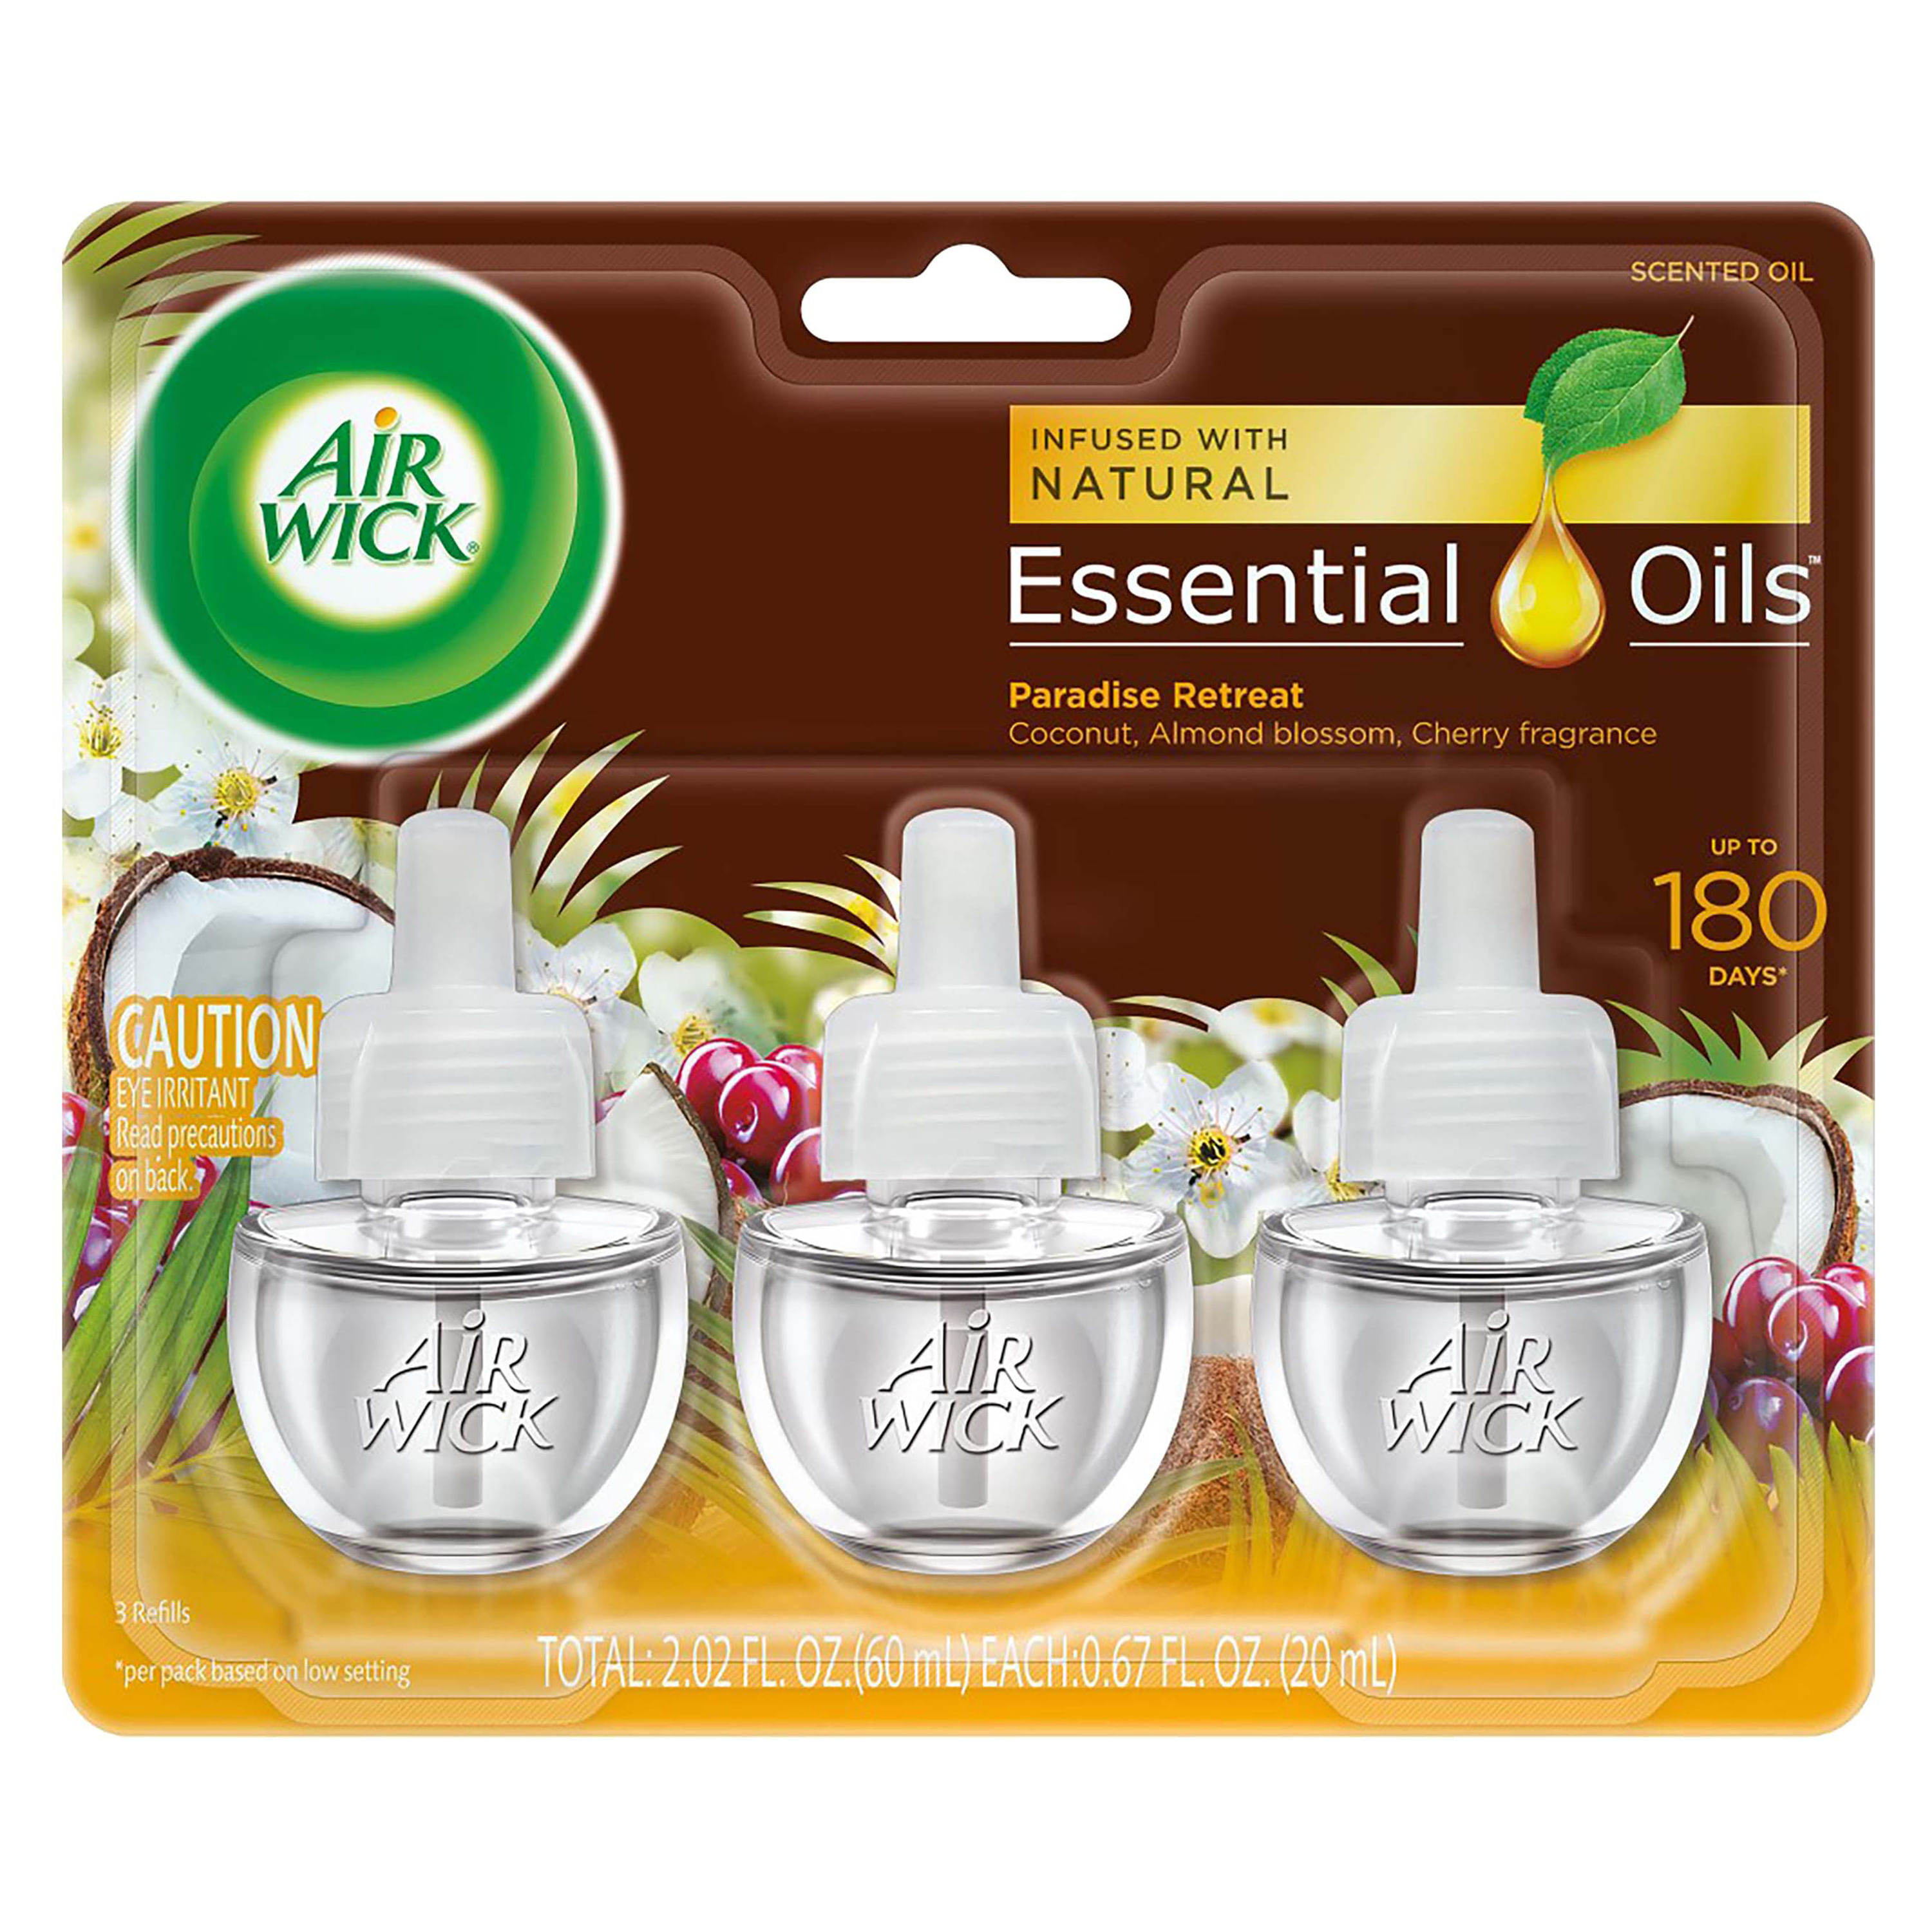 Essentials Oils Flor Recambio Eléctrico, 21 ml - air-wick